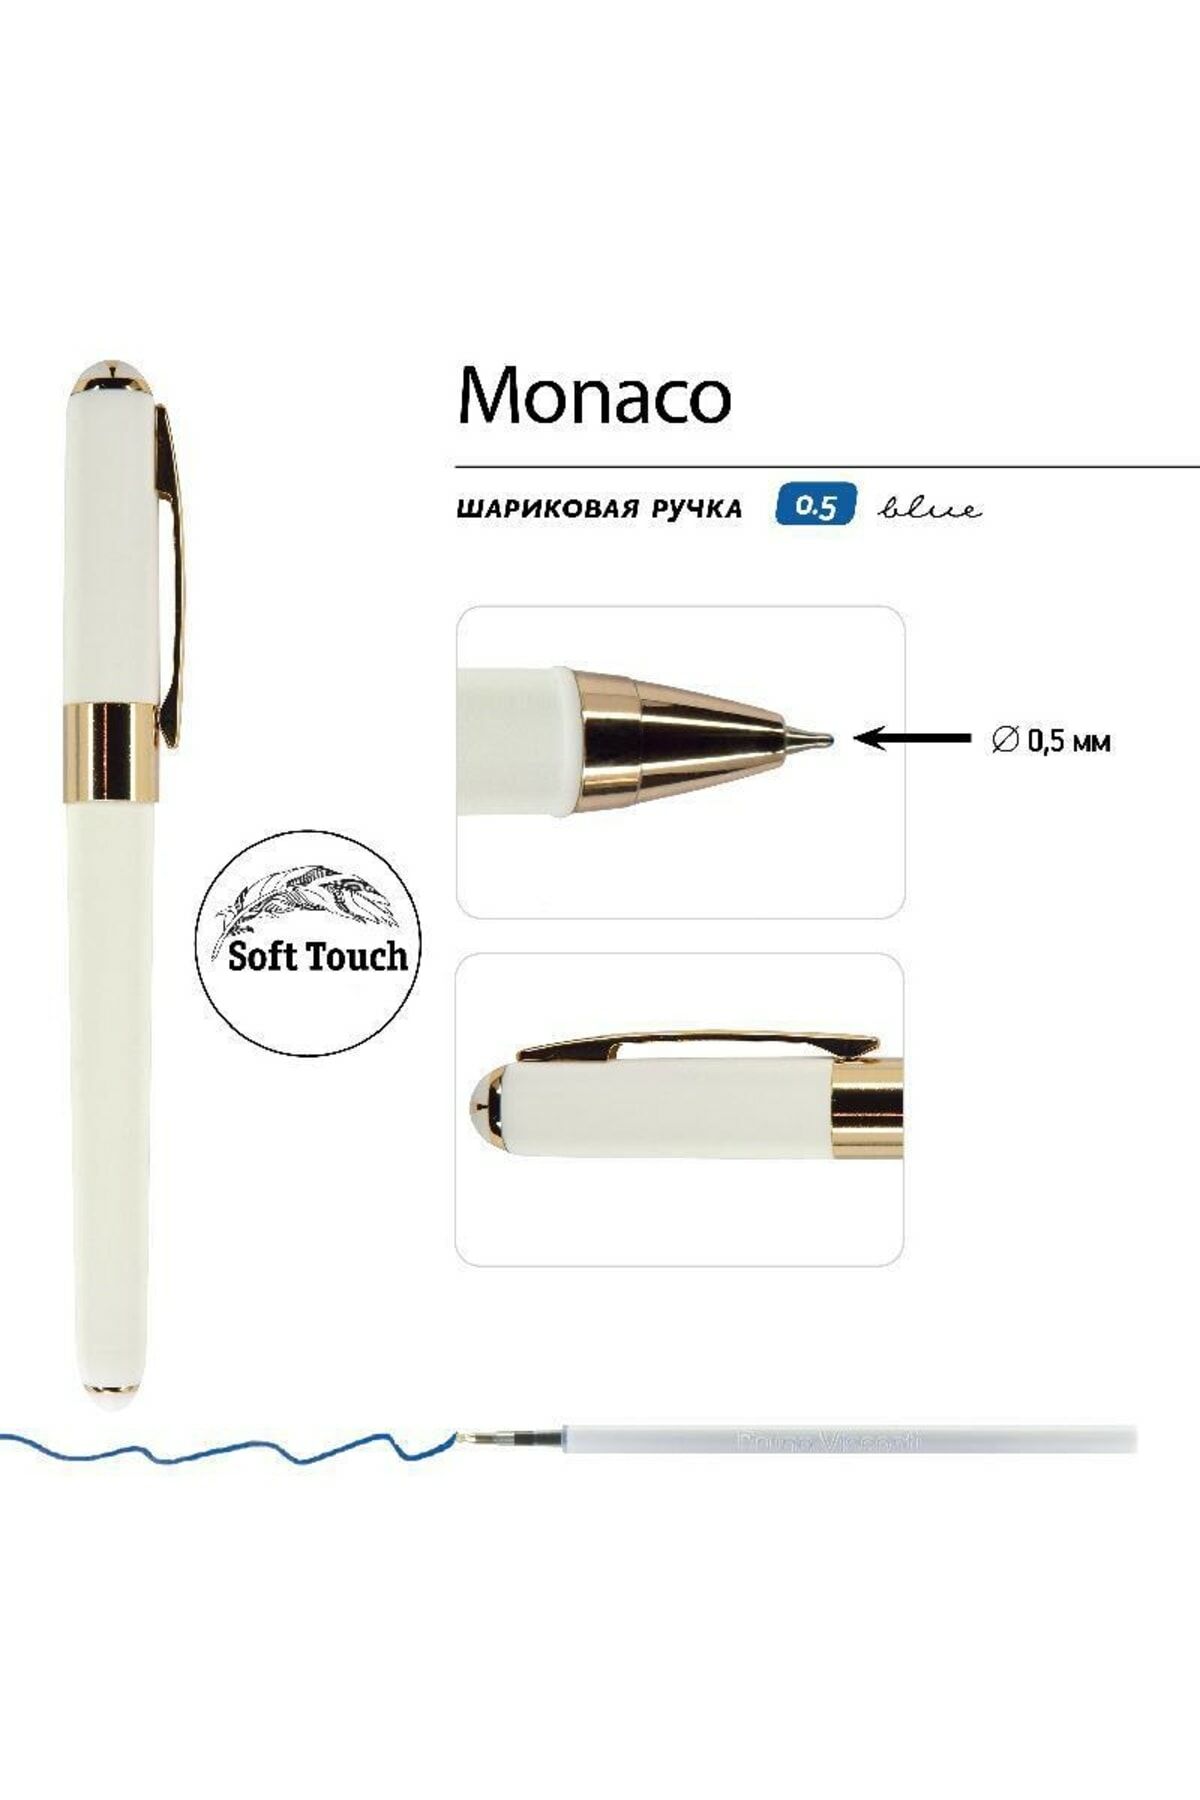 Monaco Tükenmez Kalem-Mavi-0,5 Mm. Kutulu - (beyaz Gövde, Lacivert Kutu)